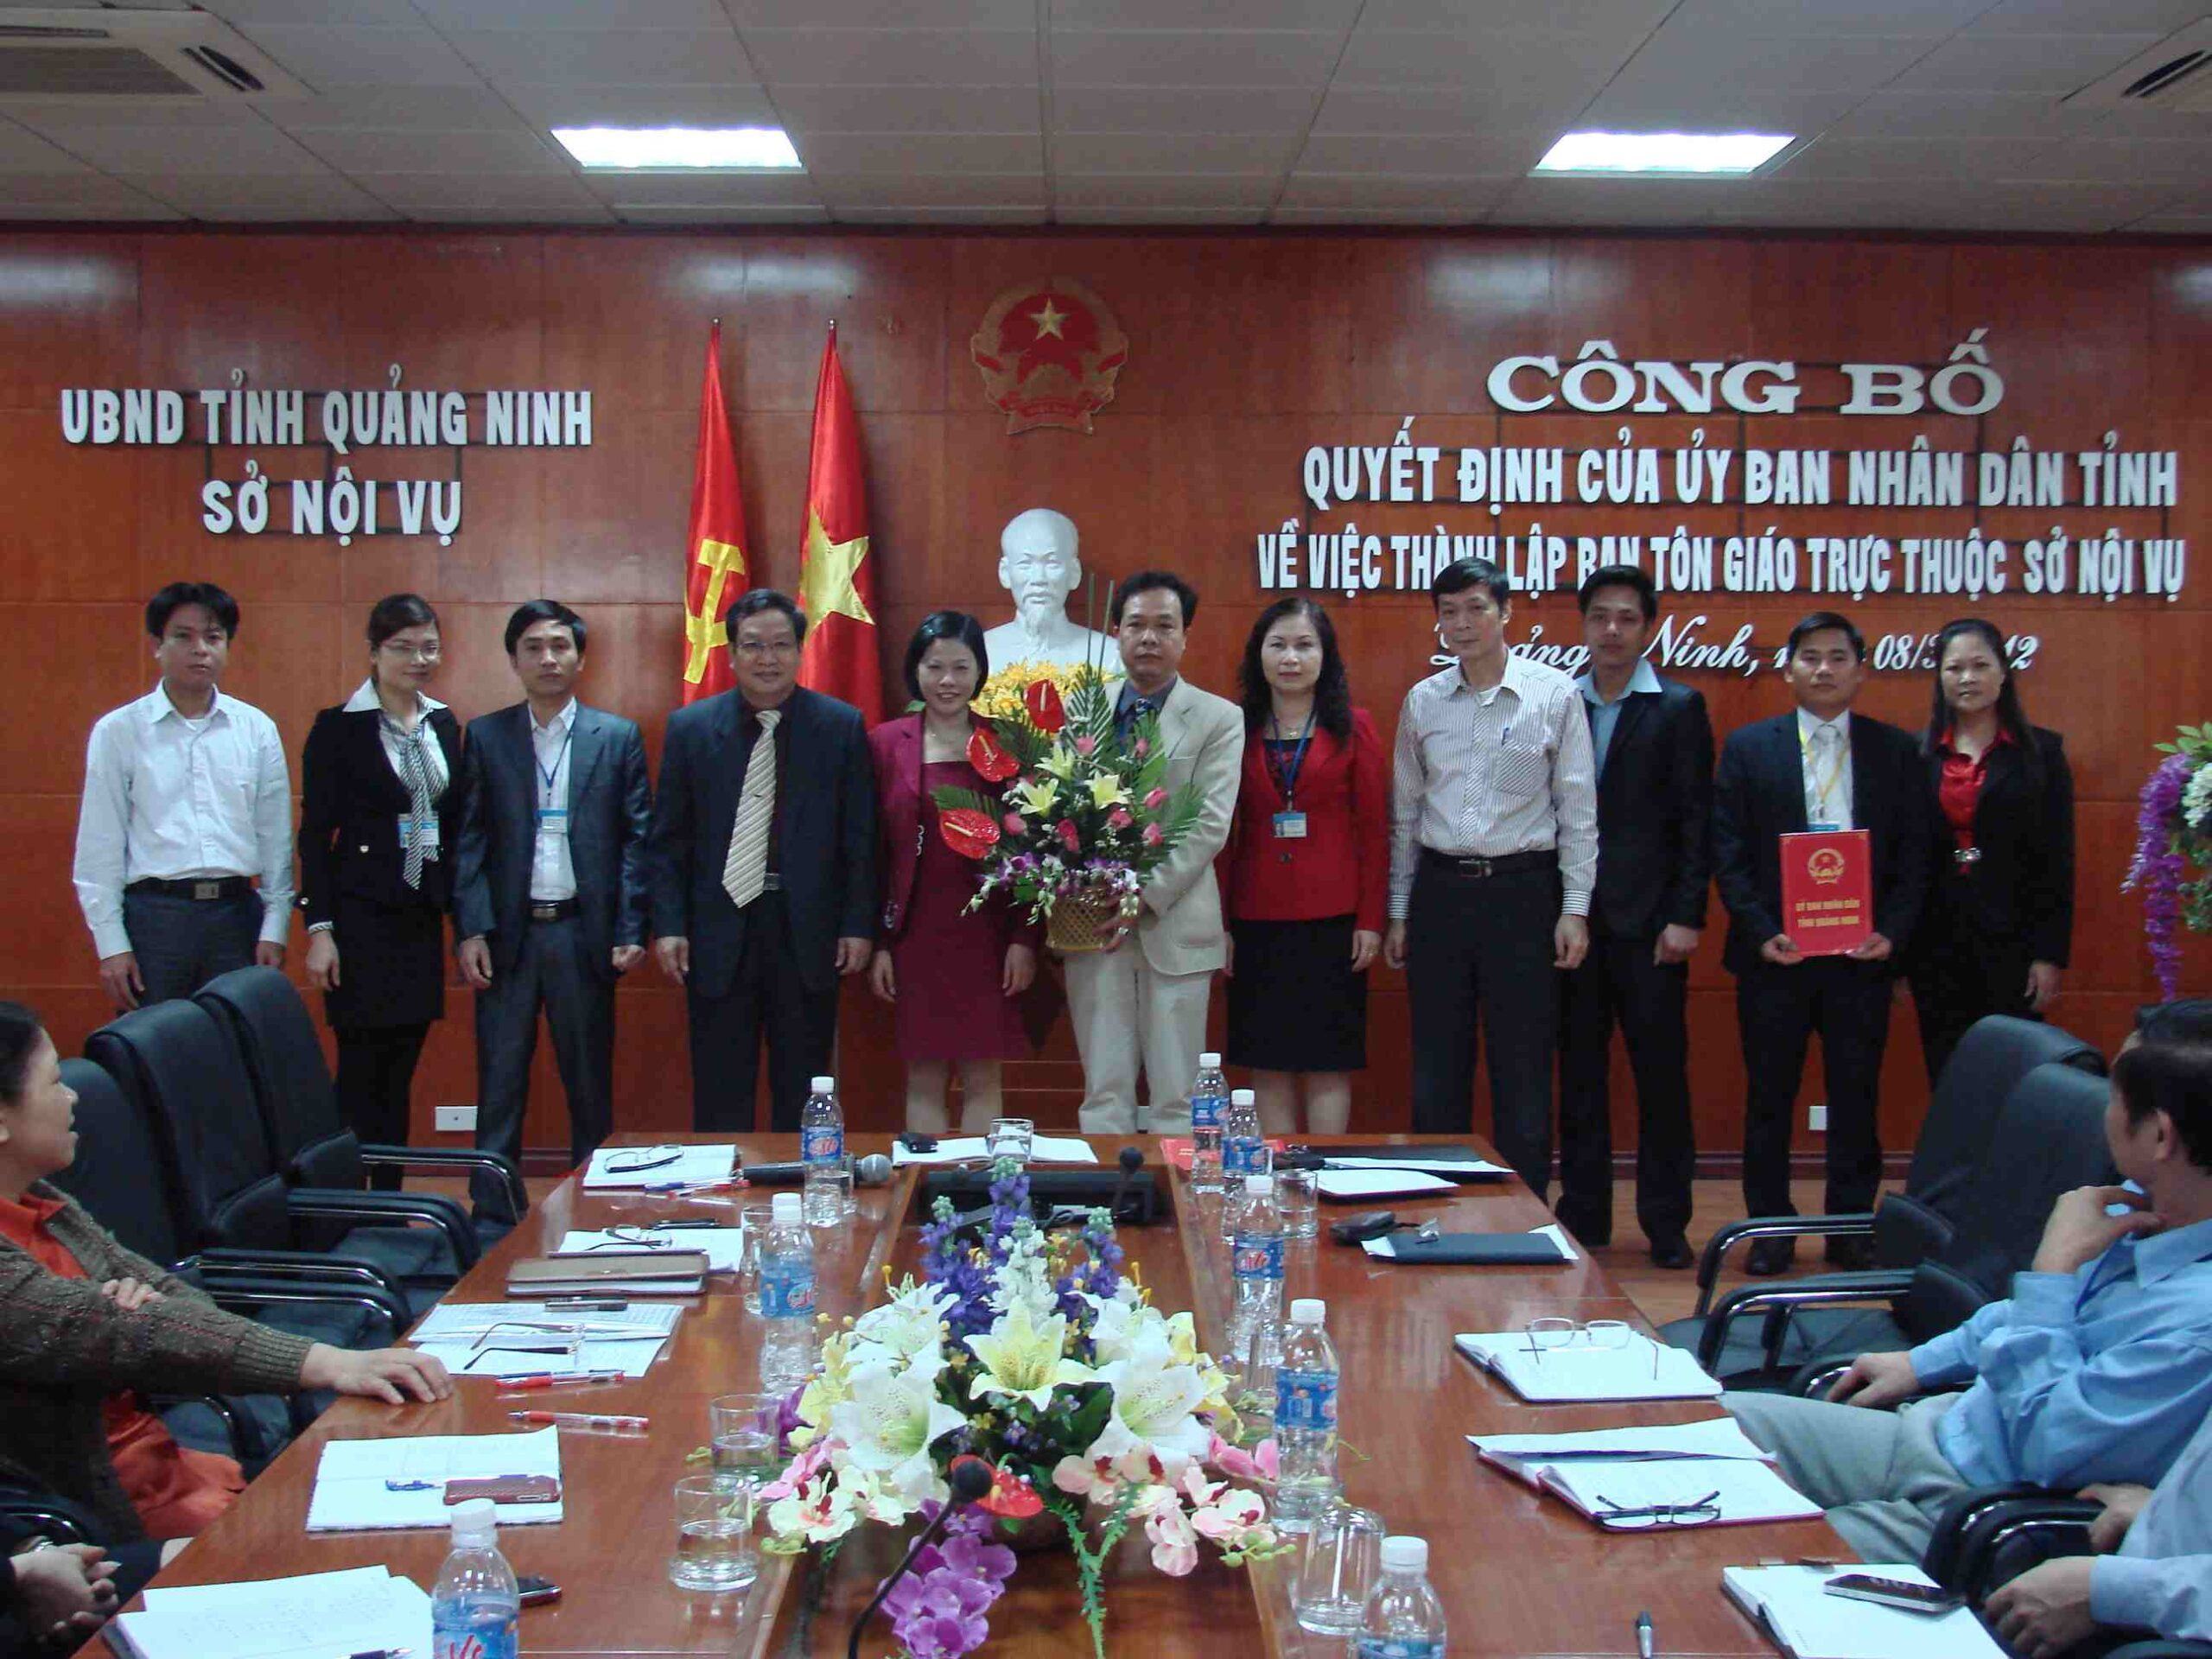 Tài liệu sở nội vụ Quảng Ninh 2020 - Lĩnh vực Hành chính tổng hợp